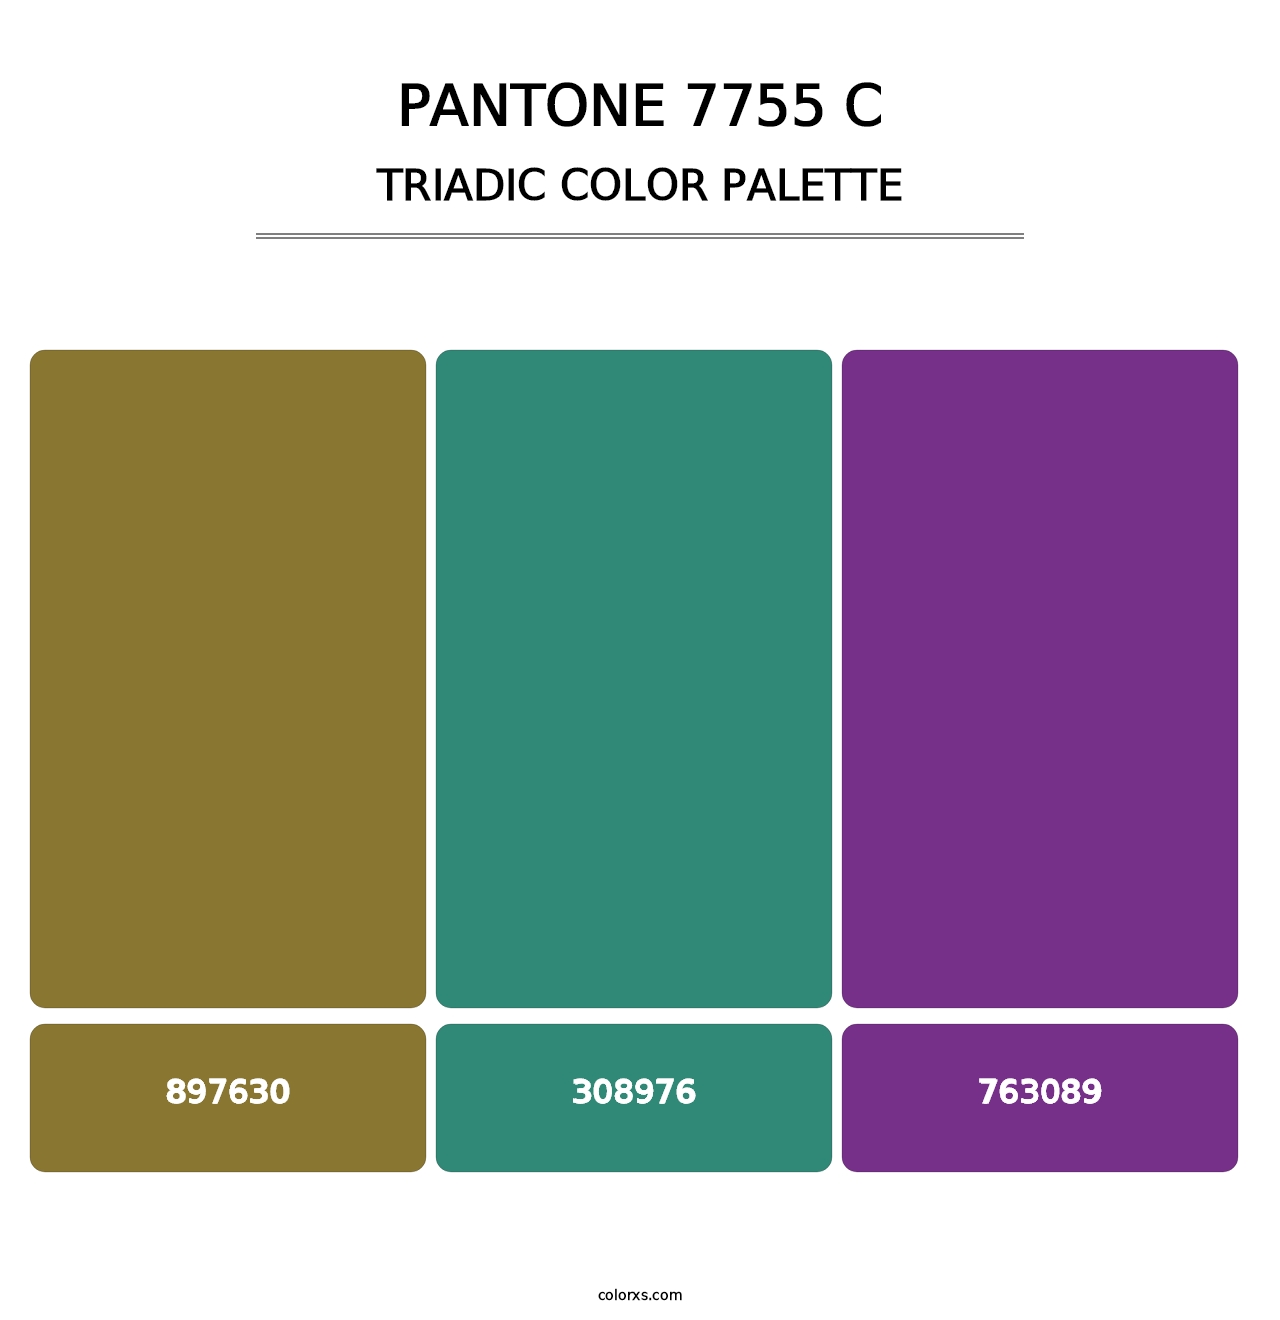 PANTONE 7755 C - Triadic Color Palette